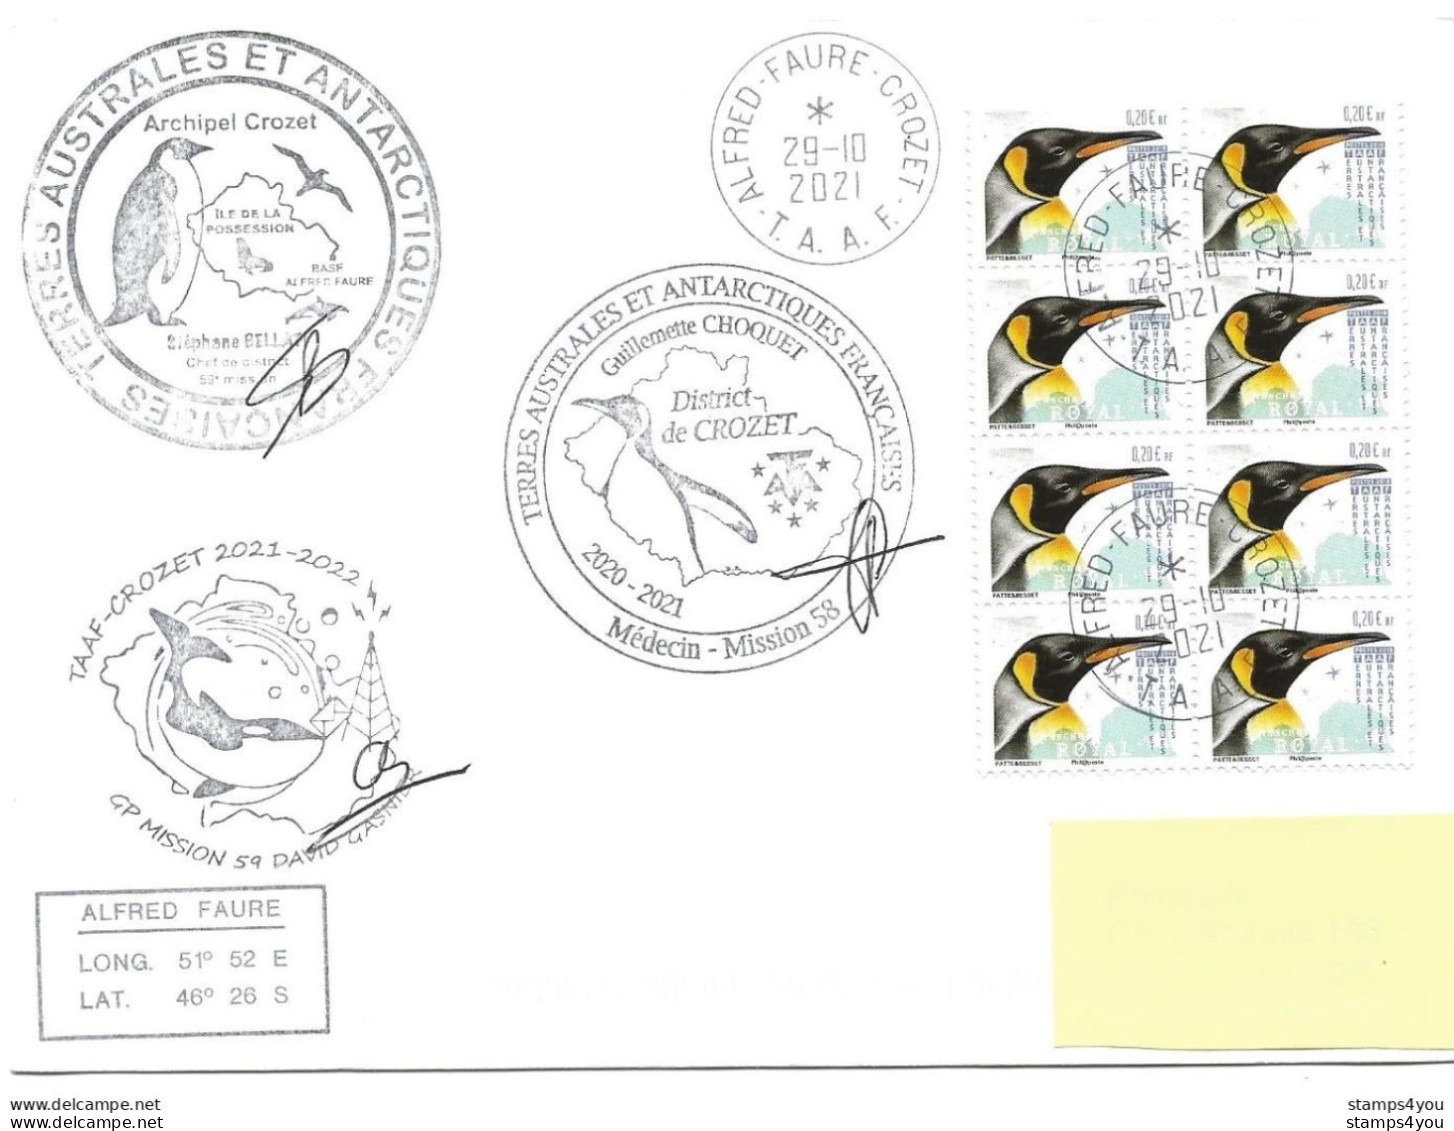 255 - 67 - Enveloippe TAAF Crozet - Cachets Illustrés Mission 59 - 2021 - Bases Antarctiques